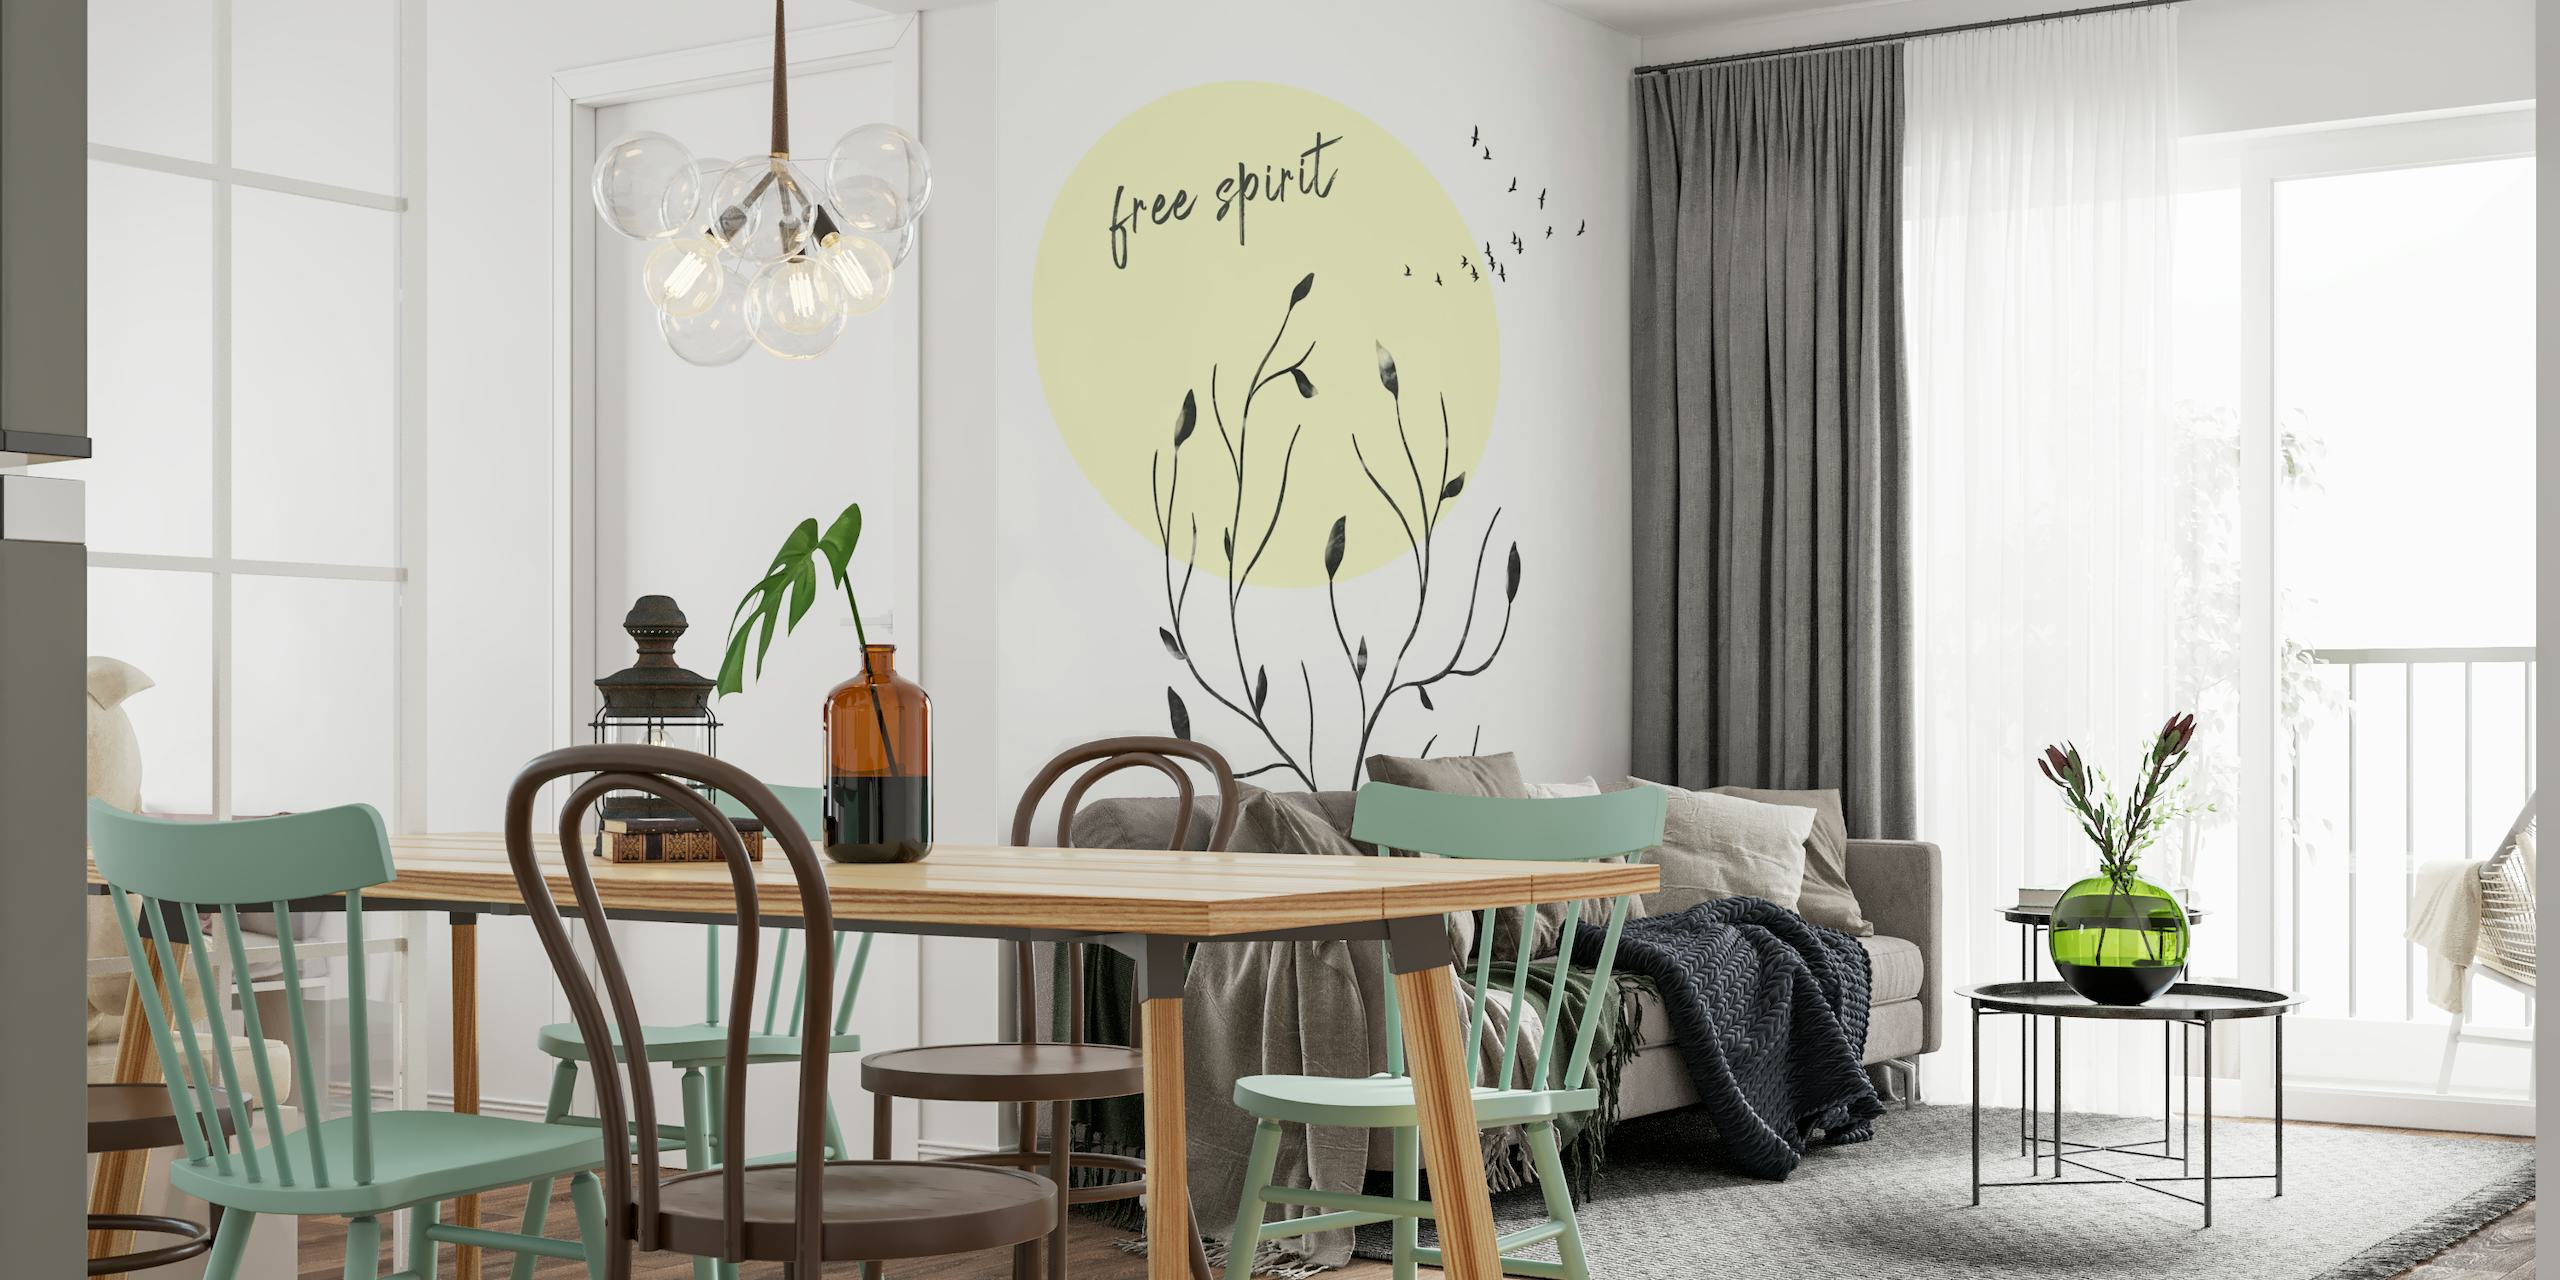 Mural minimalista 'Free Spirit' con siluetas botánicas y texto, en color crema y negro con un círculo amarillo